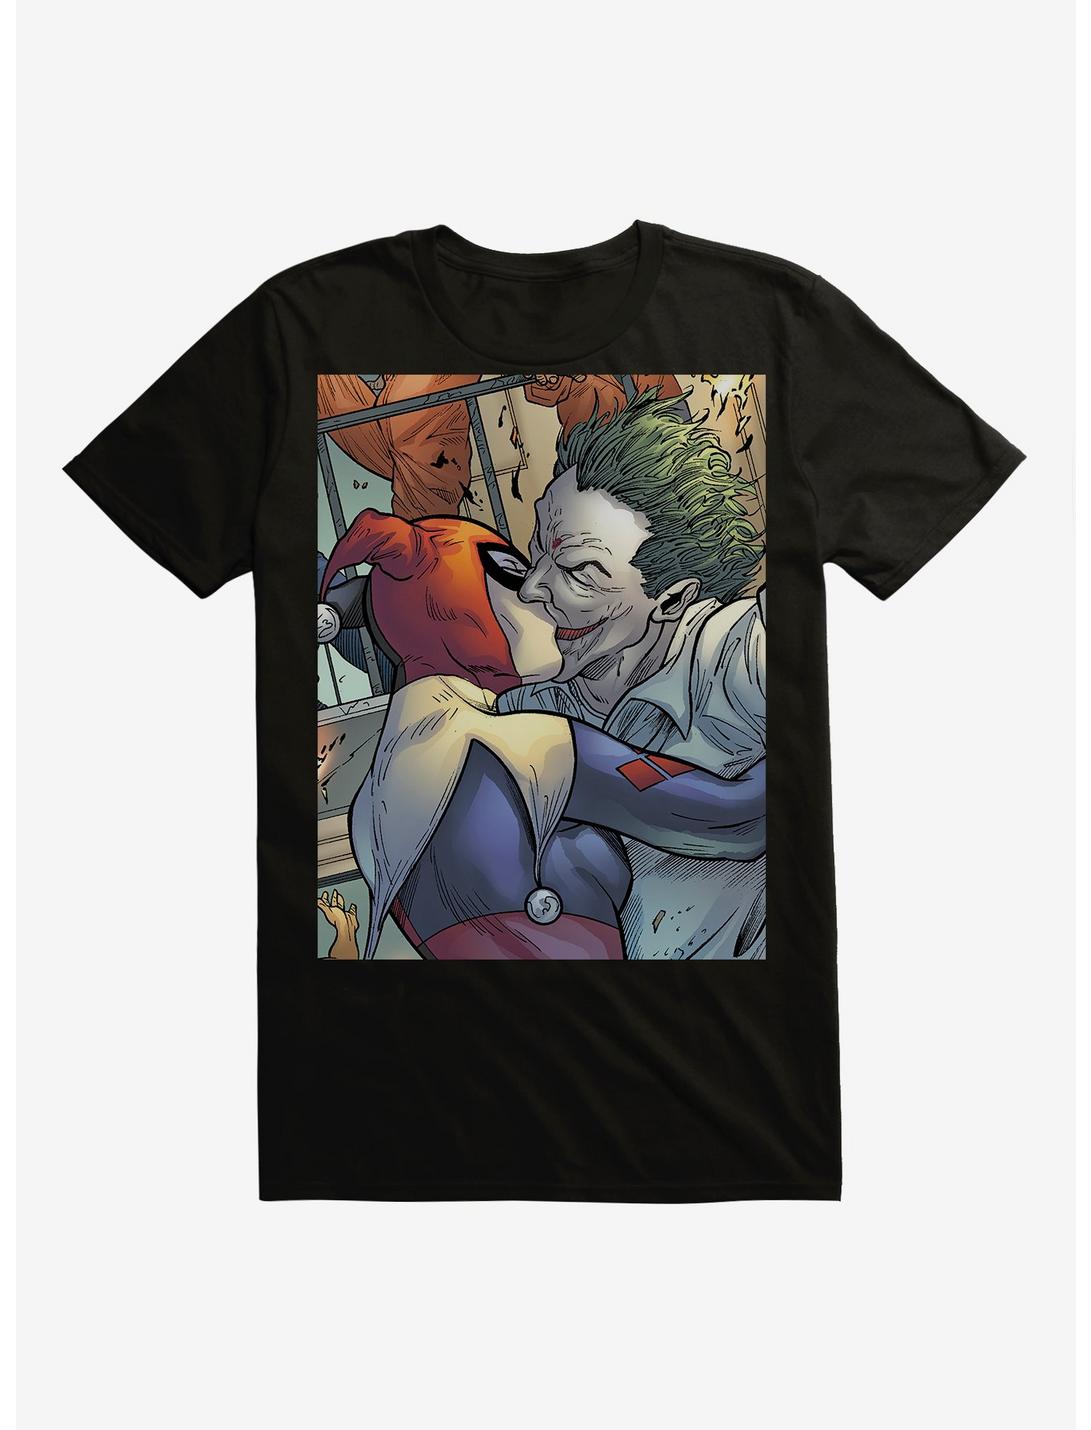 DC Comics Batman The Joker Harley Quinn Kiss Black T-Shirt, , hi-res